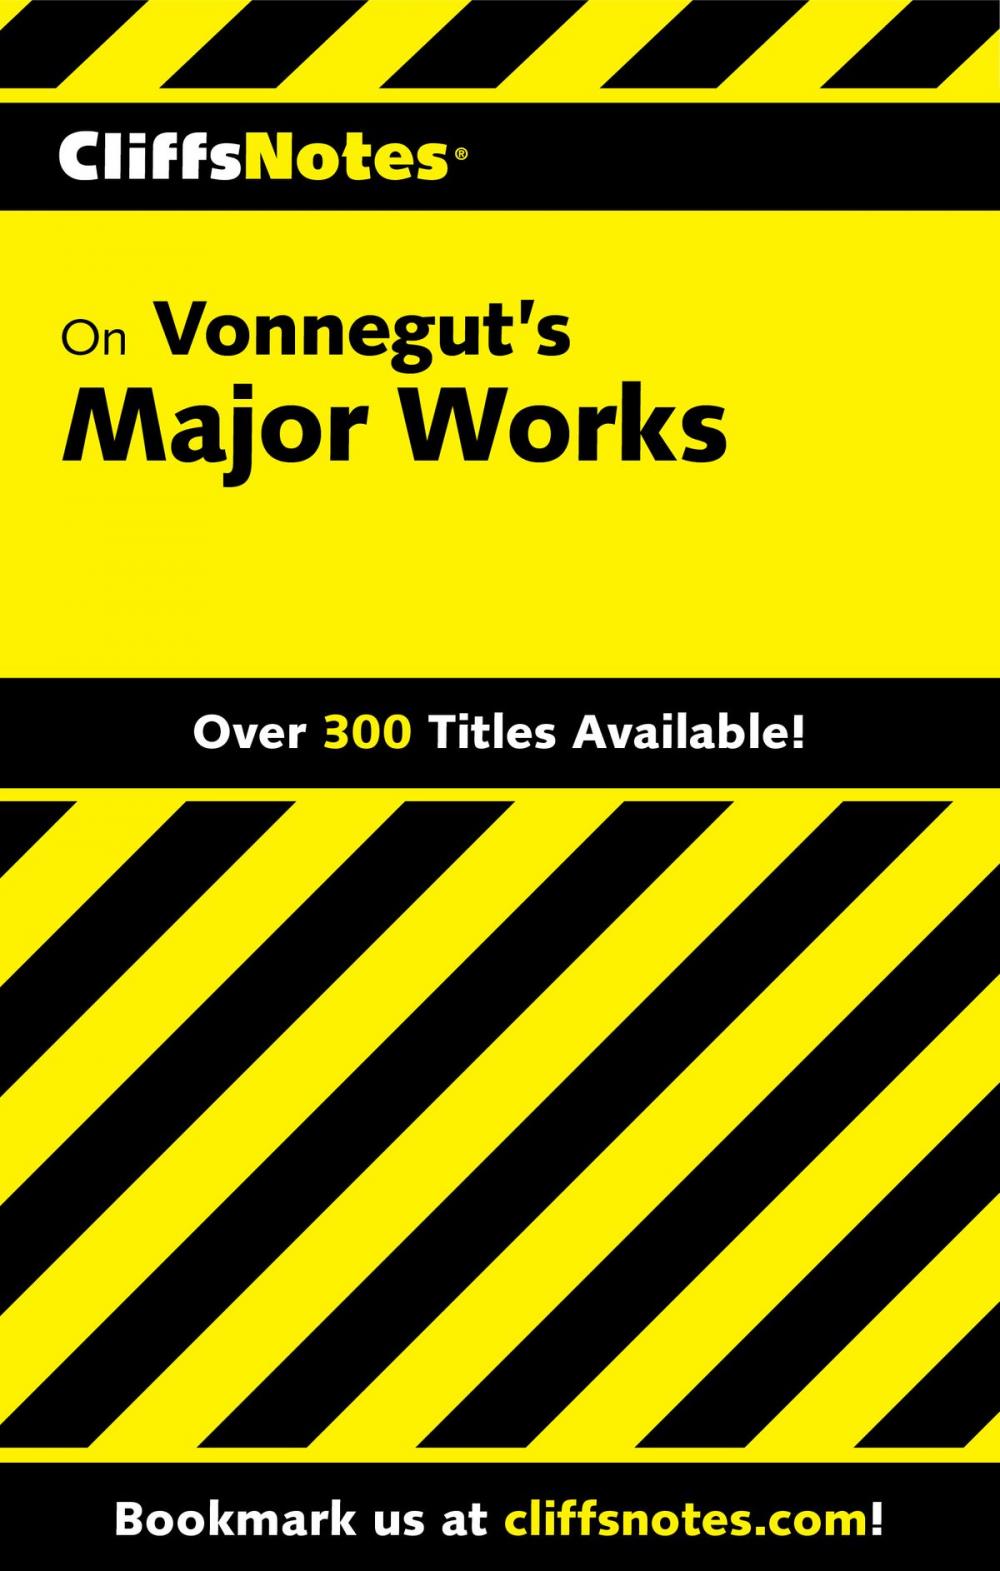 Big bigCover of CliffsNotes on Vonnegut's Major Works